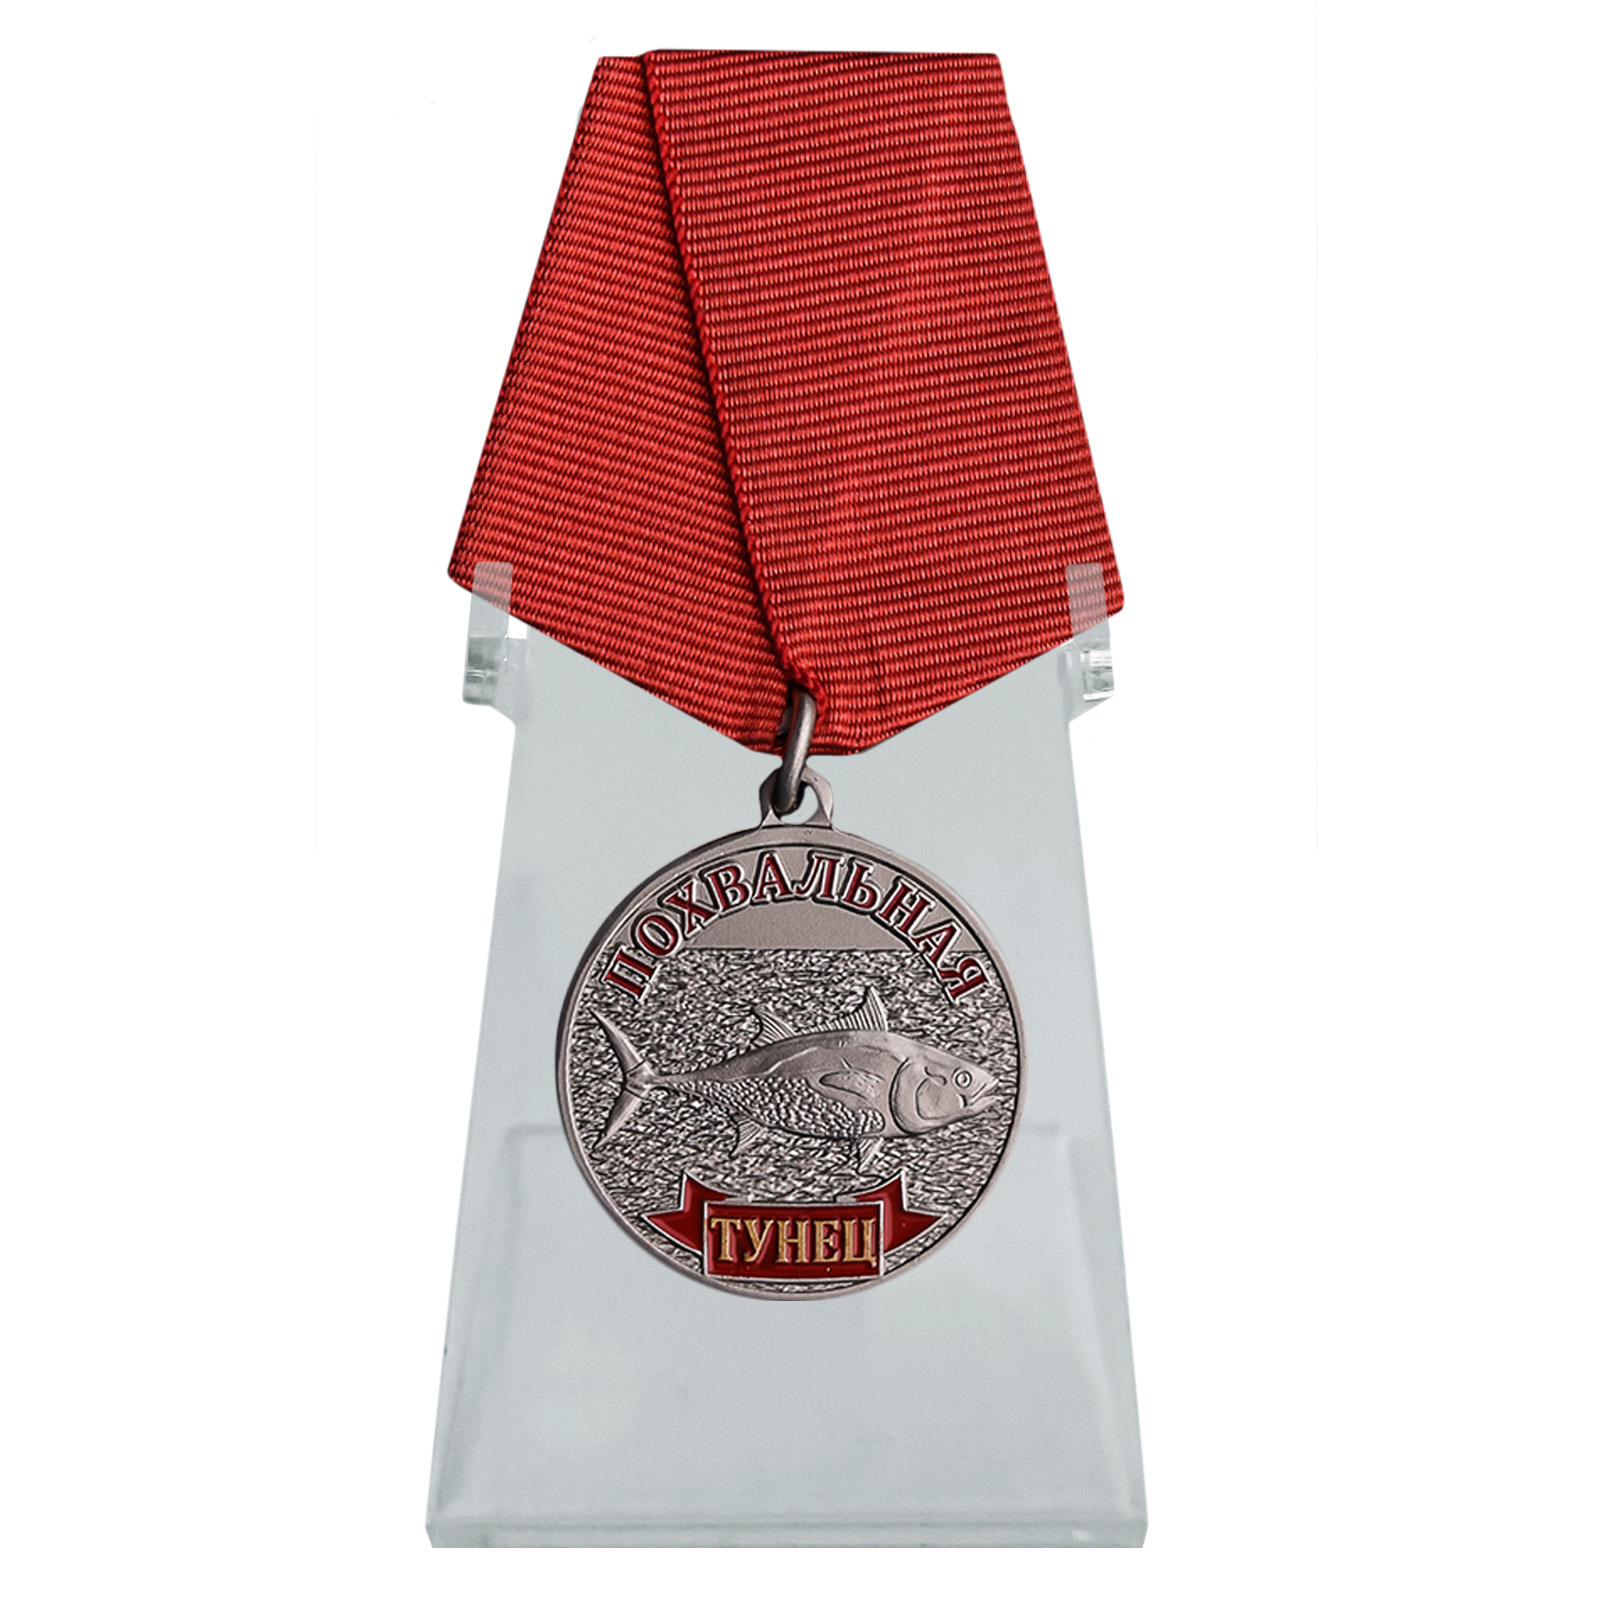 Купить медаль Тунец в подарок на подставке онлайн выгодно